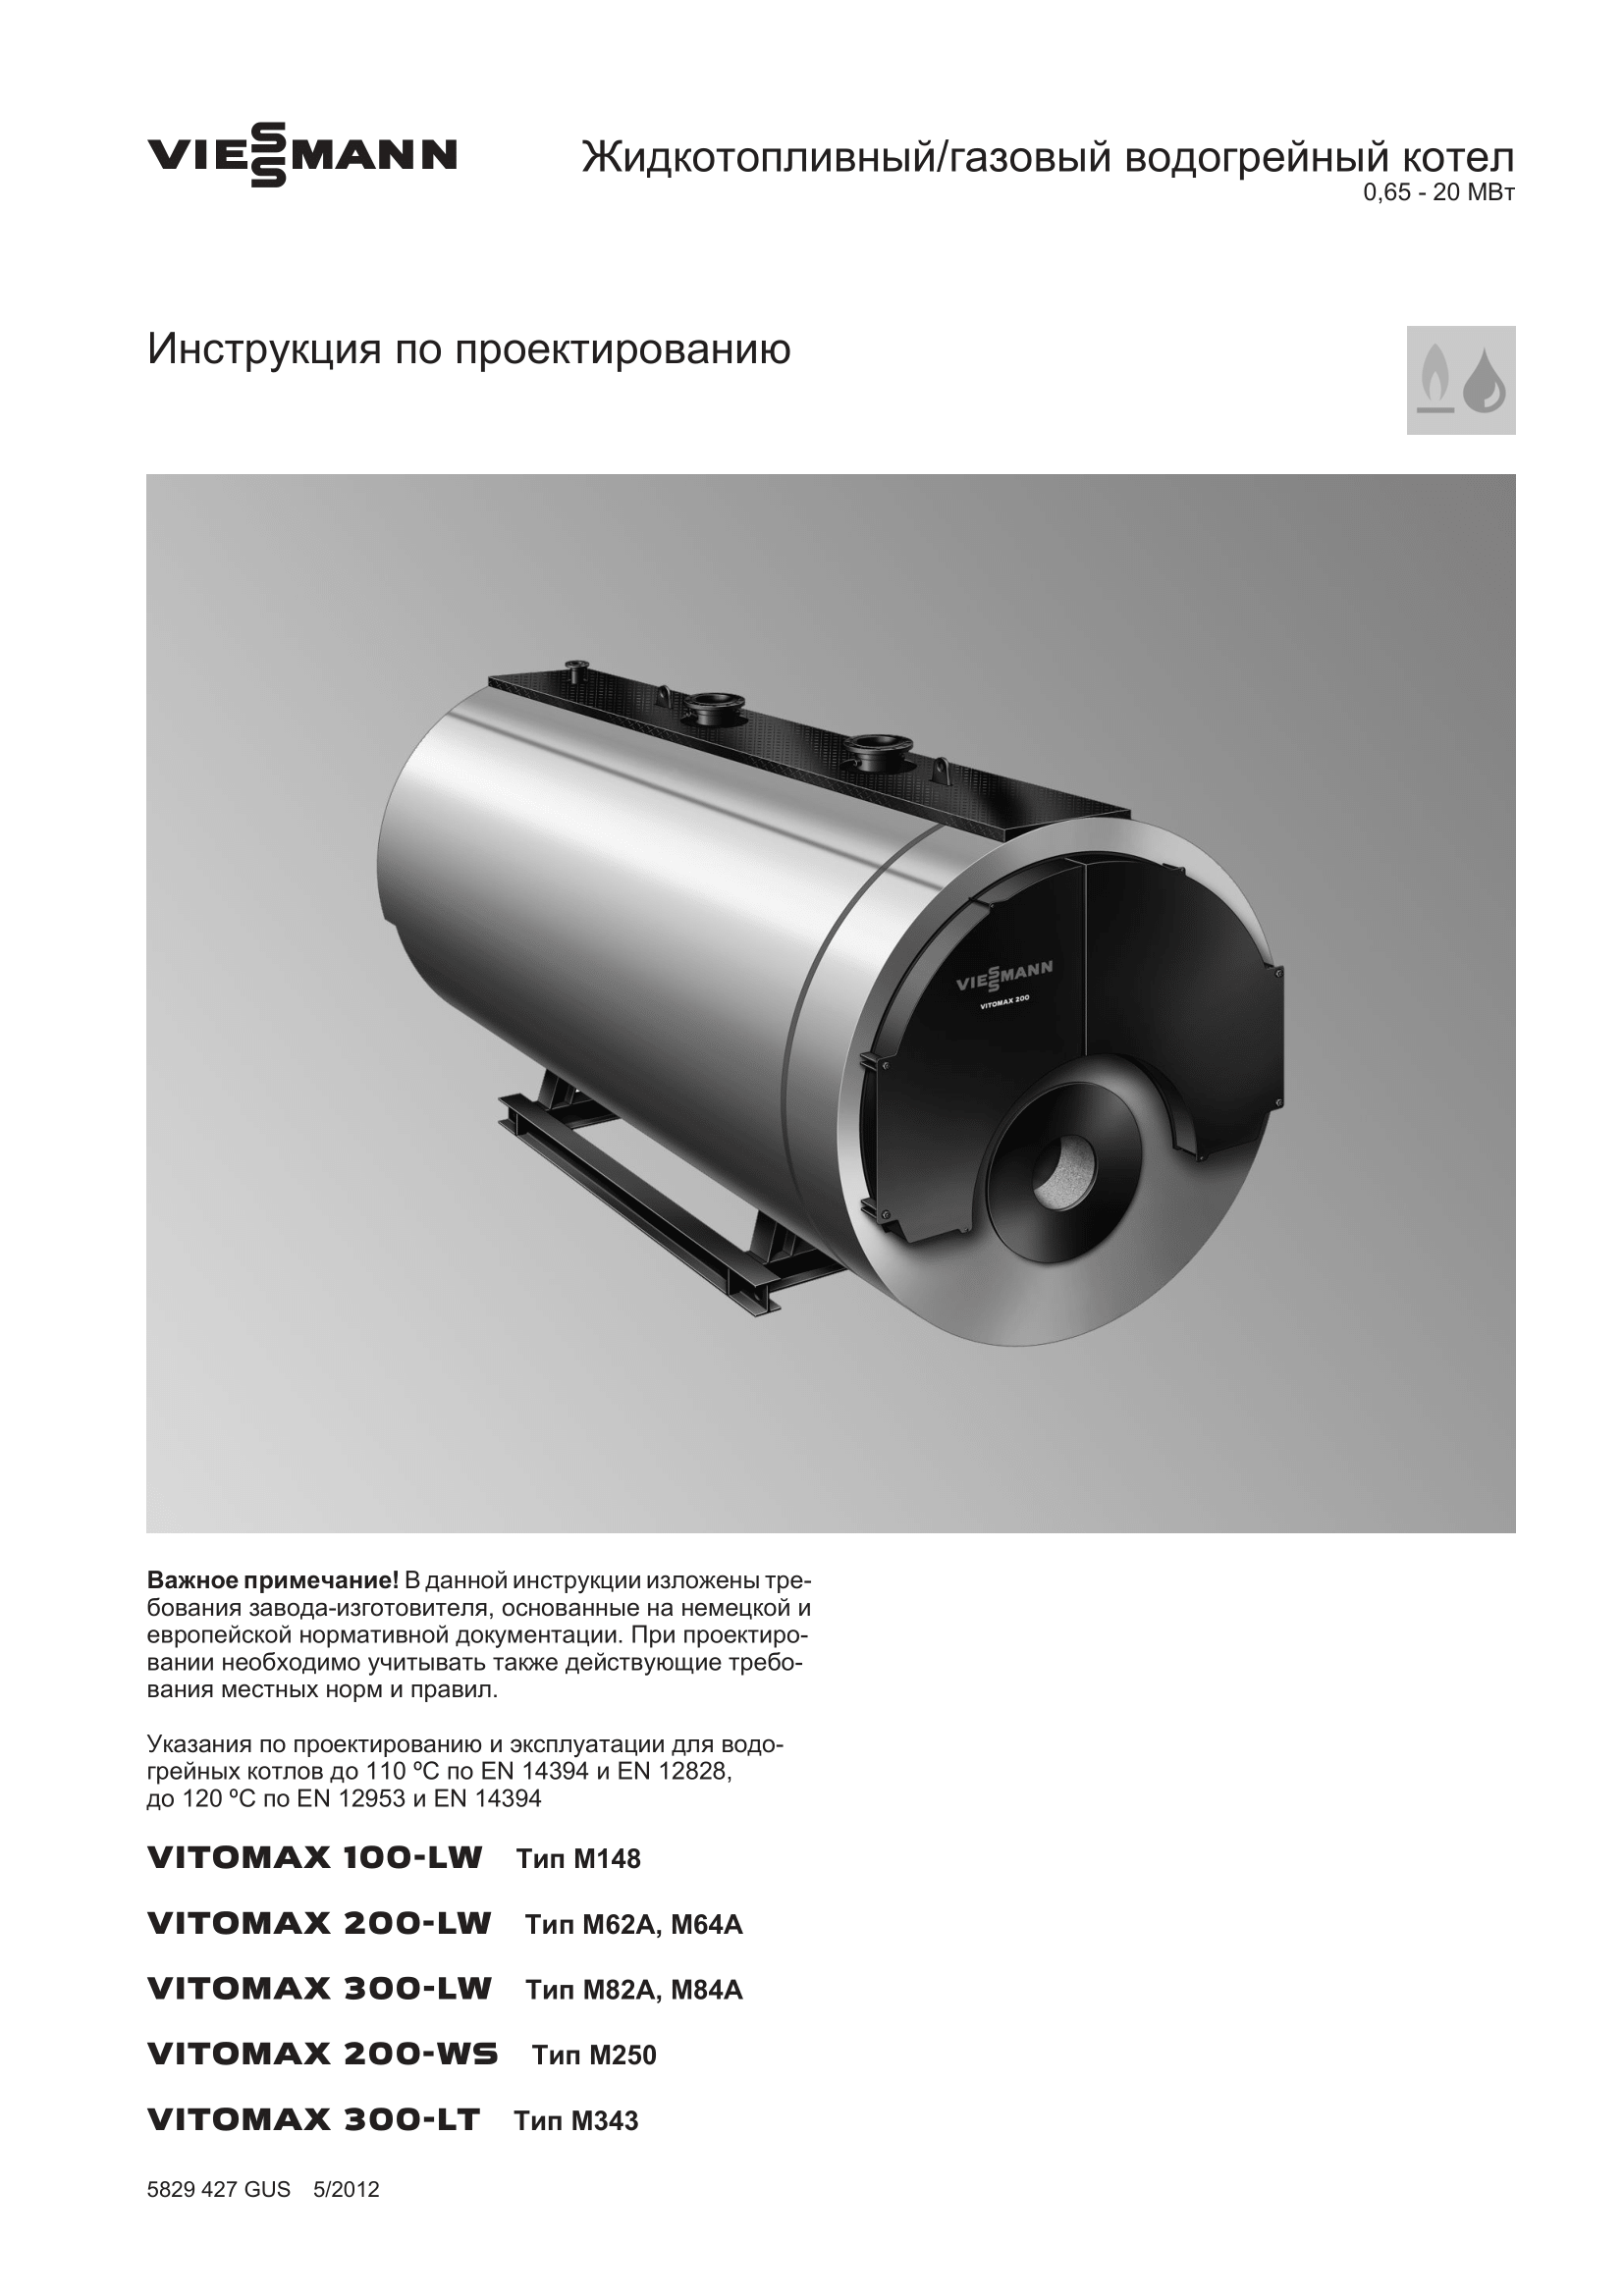 Фотография Инструкция по проектированию для комбинированного котла (дизель/газ) Vitomax 200-LW M64B мощностью 0,65 - 20 МВт